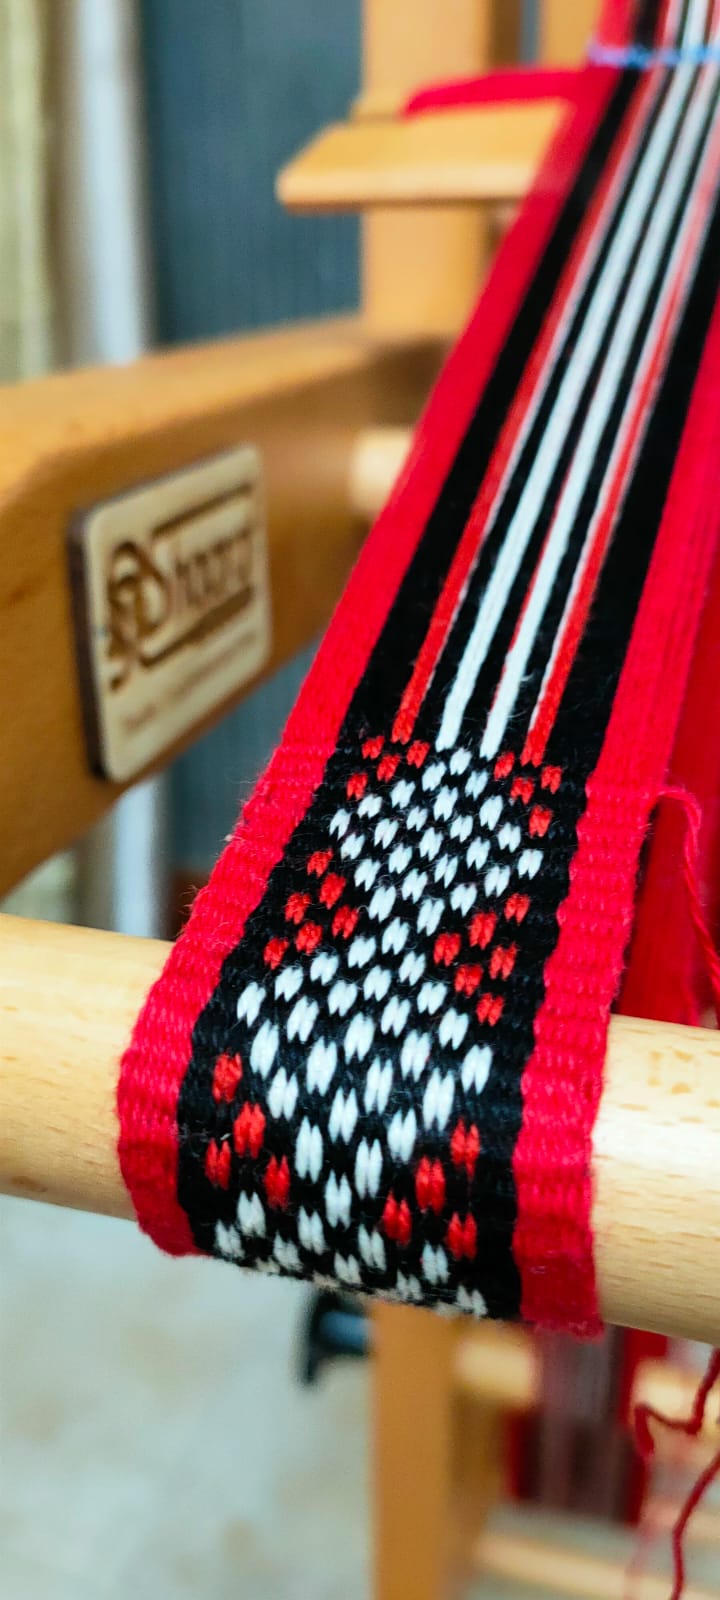 Wide Indefinite-length Inkle Loom  Shaaraf Textile Equipment & Tools